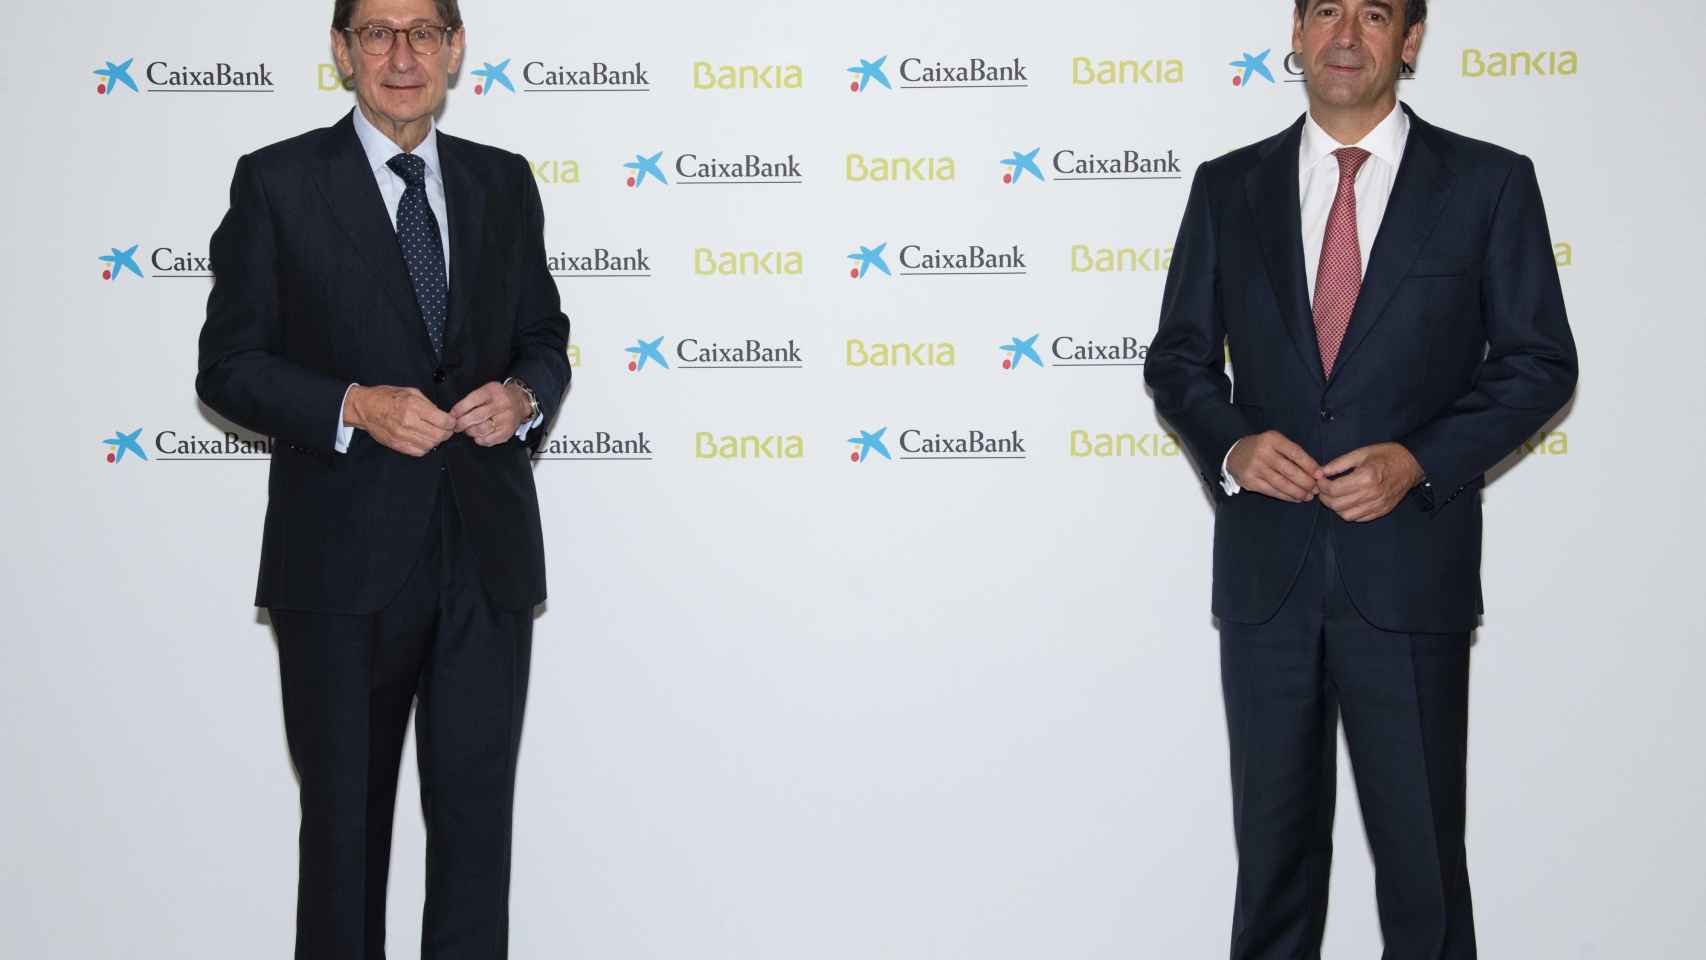 (I-D) El presidente de Bankia, que será presidente ejecutivo de la nueva entidad tras la fusión con Caixabank, José Ignacio Goirigolzarri, y del consejero delegado de CaixaBank y que será consejero delegado del nuevo banco, Gonzalo Gortázar